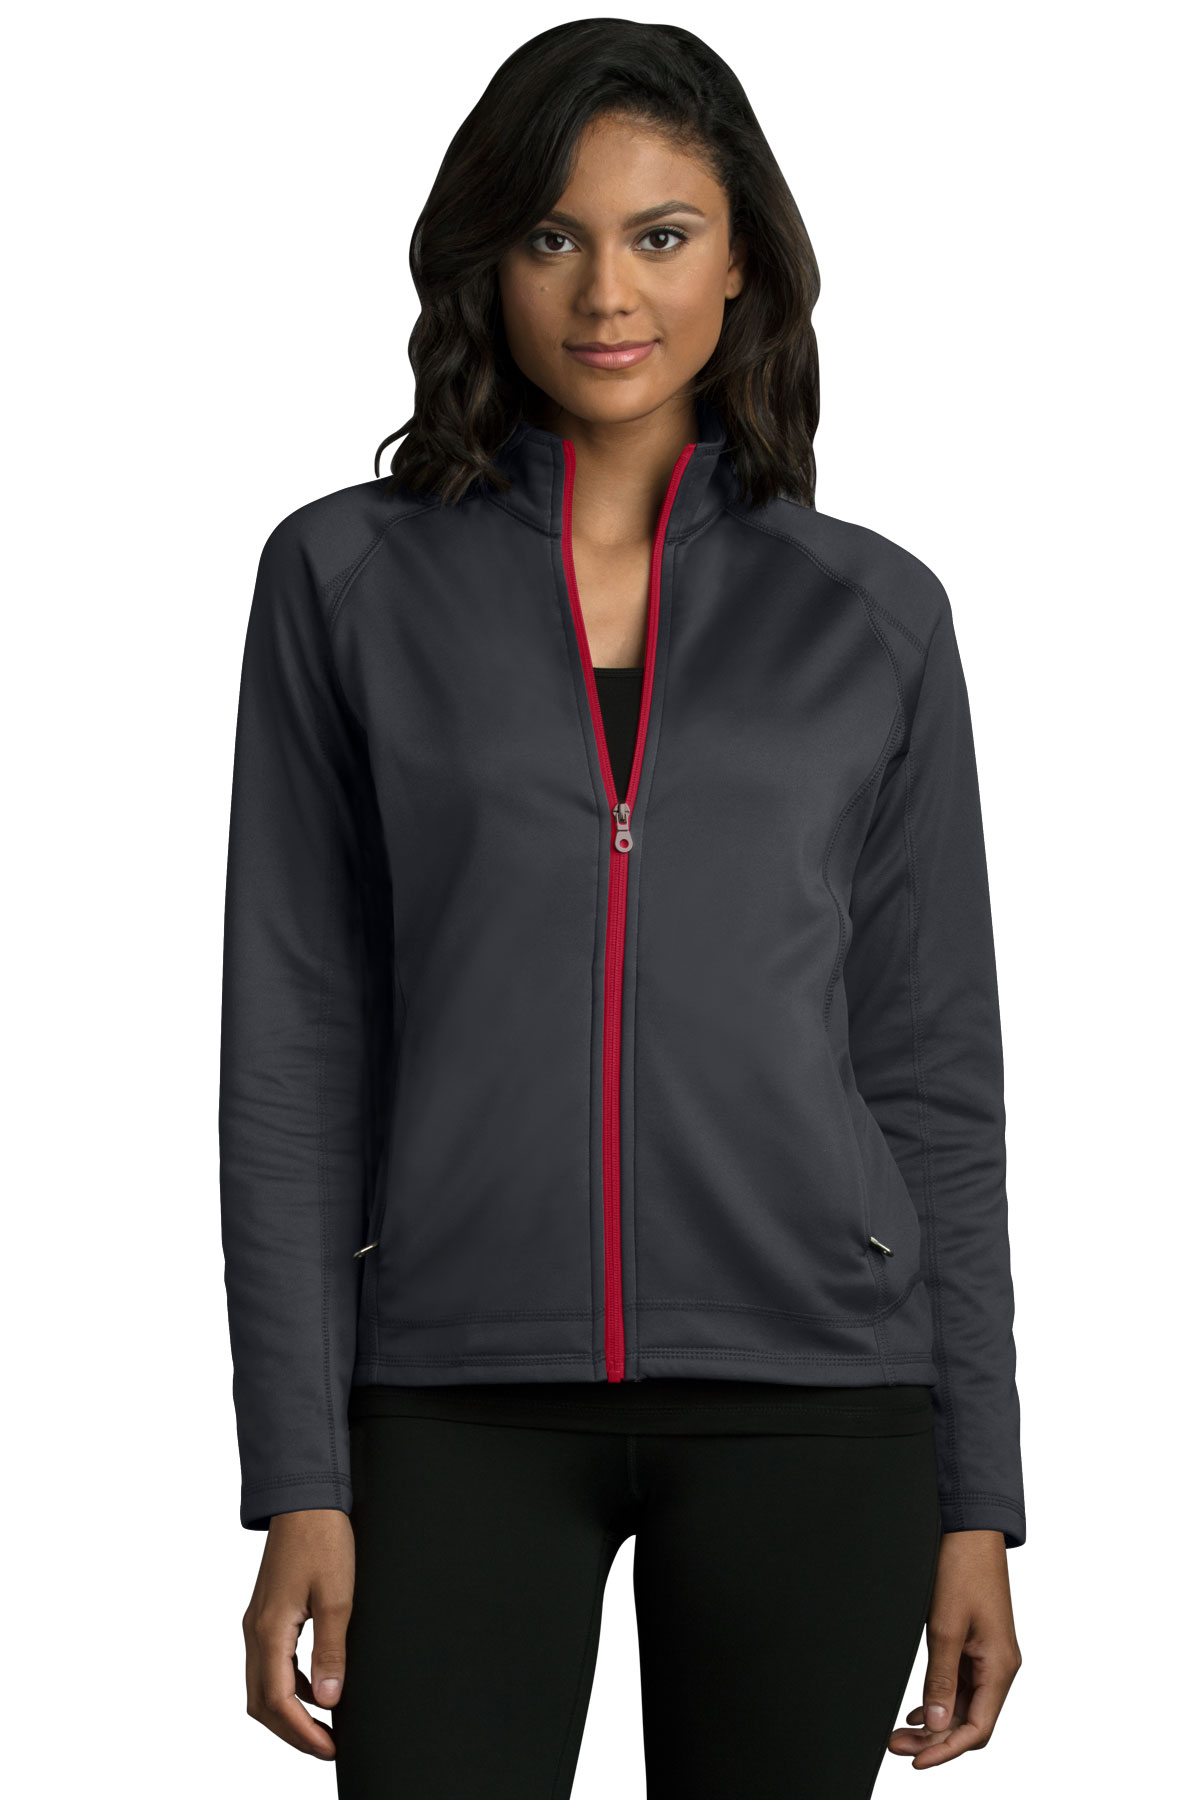 Women's Brushed Back Micro-Fleece Full-Zip Jacket - image 1 of 5